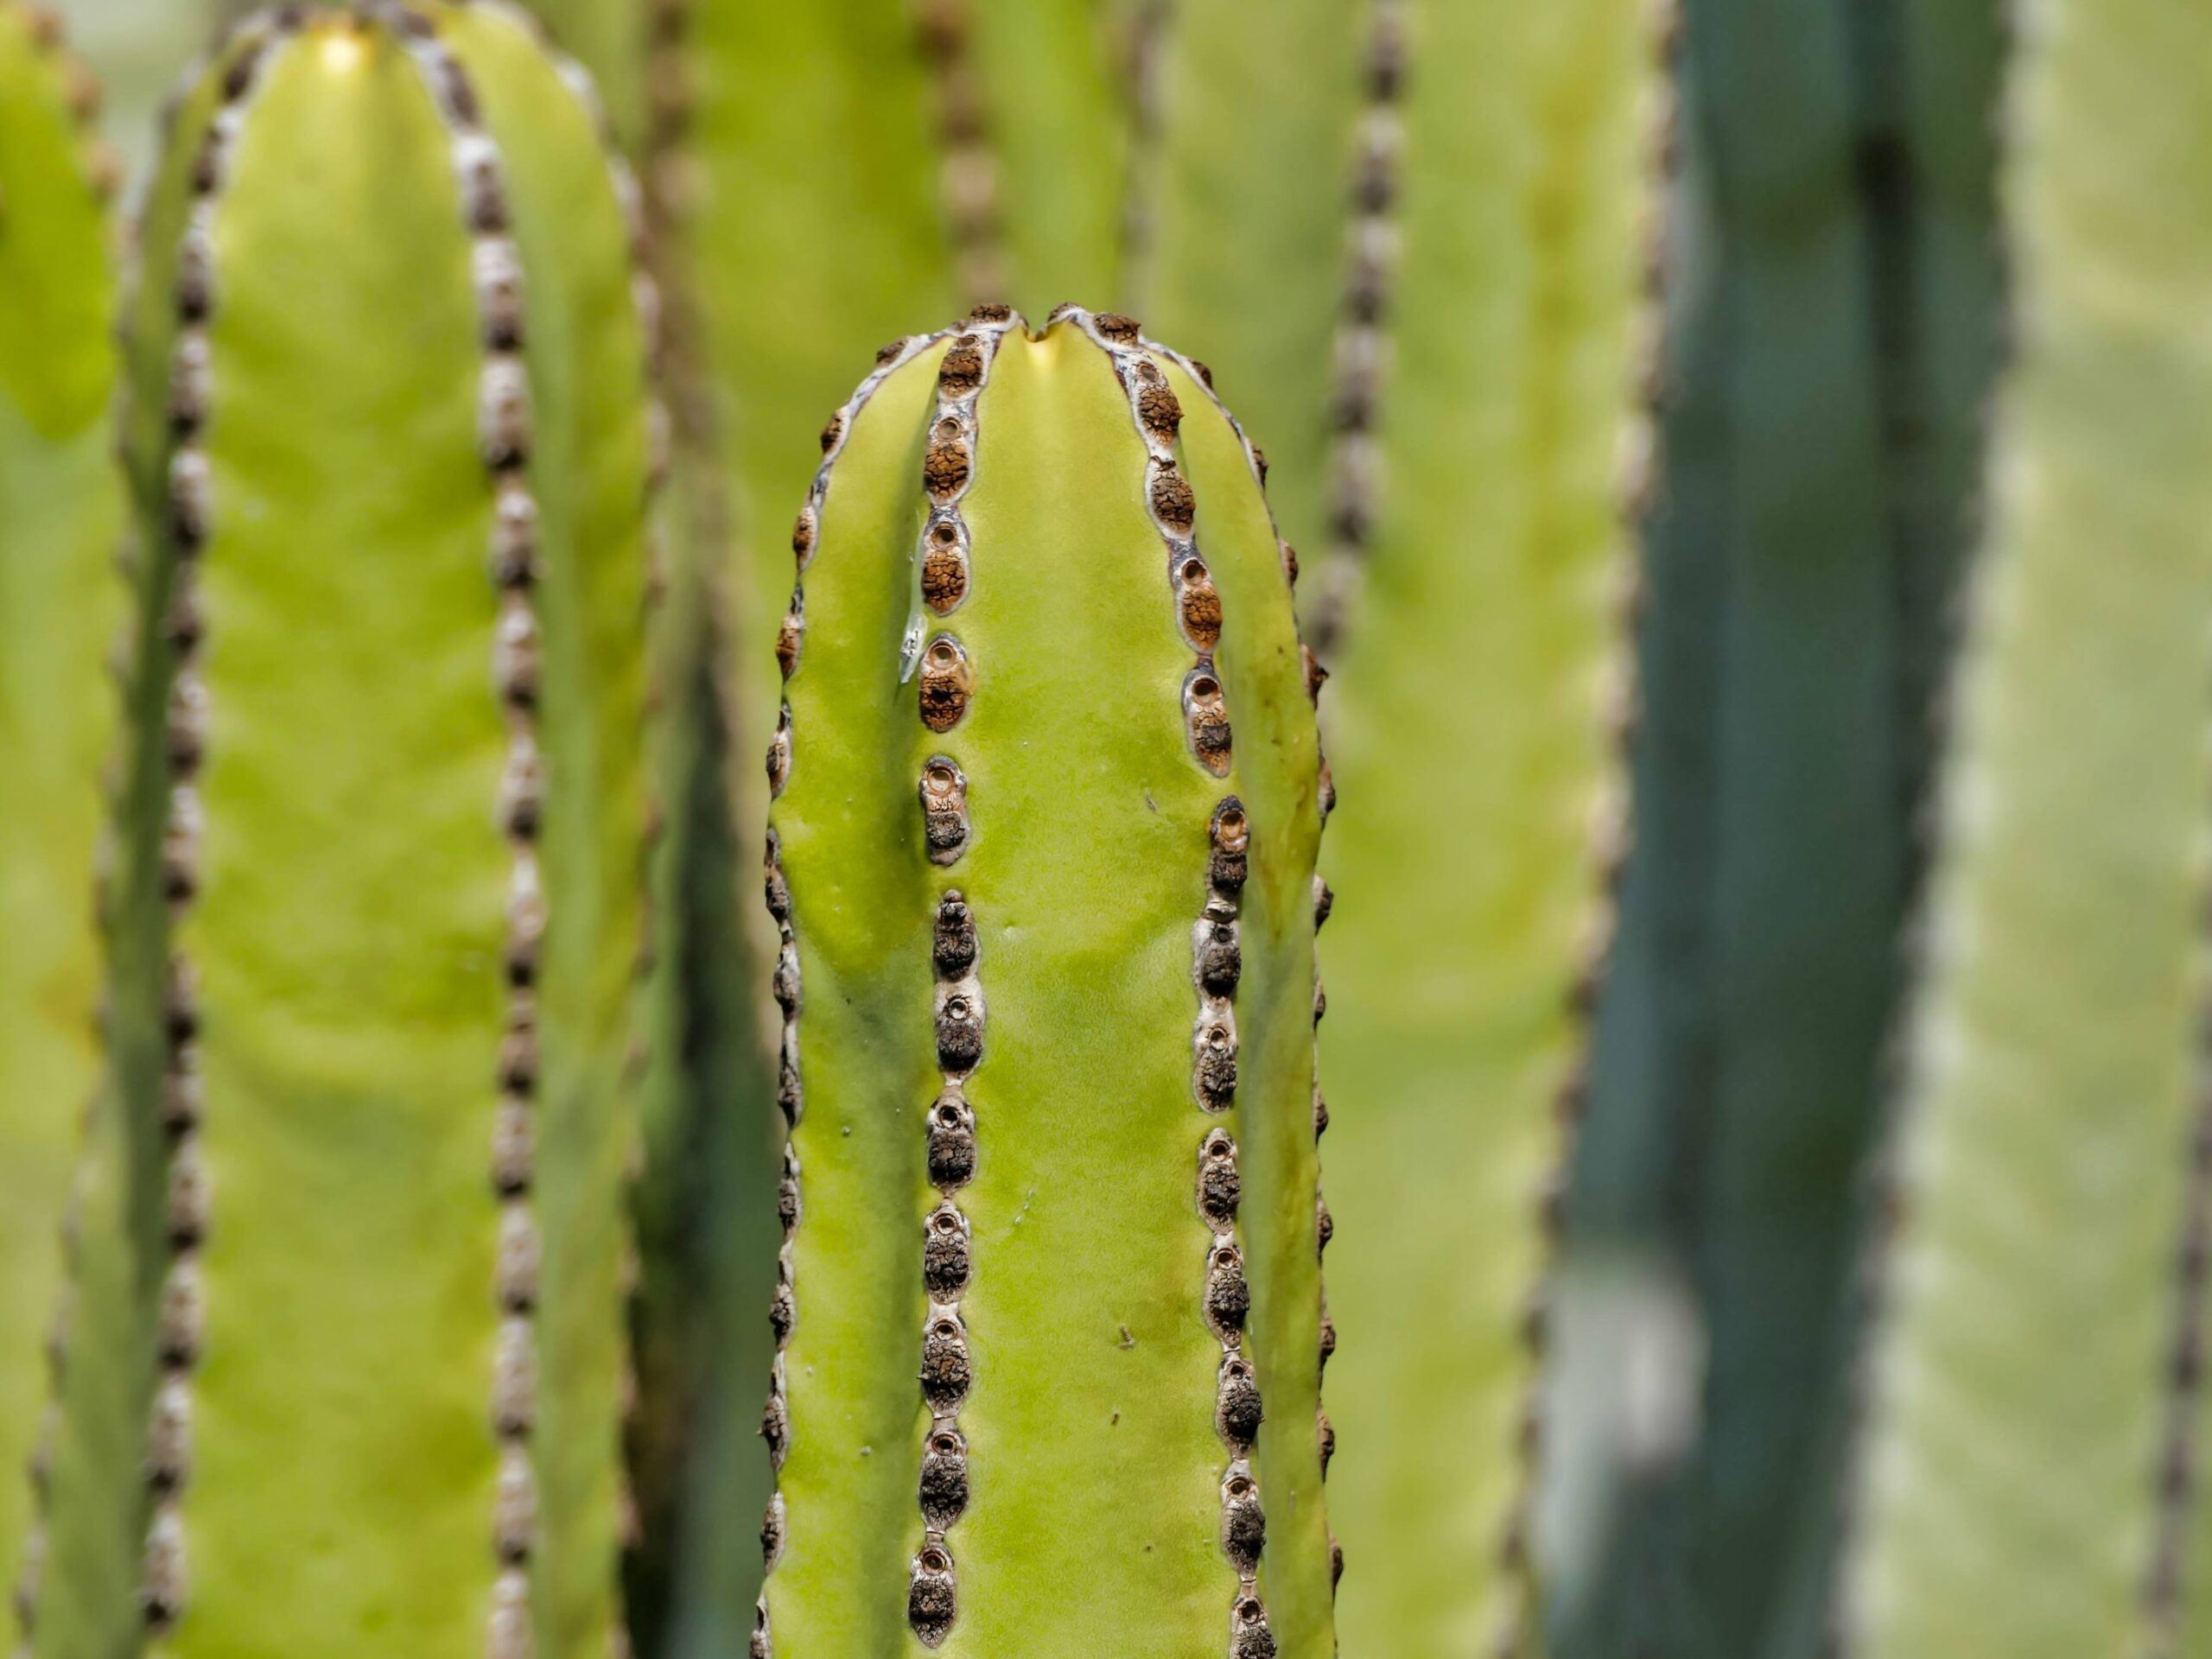 cactus altos sin espinas: san pedro